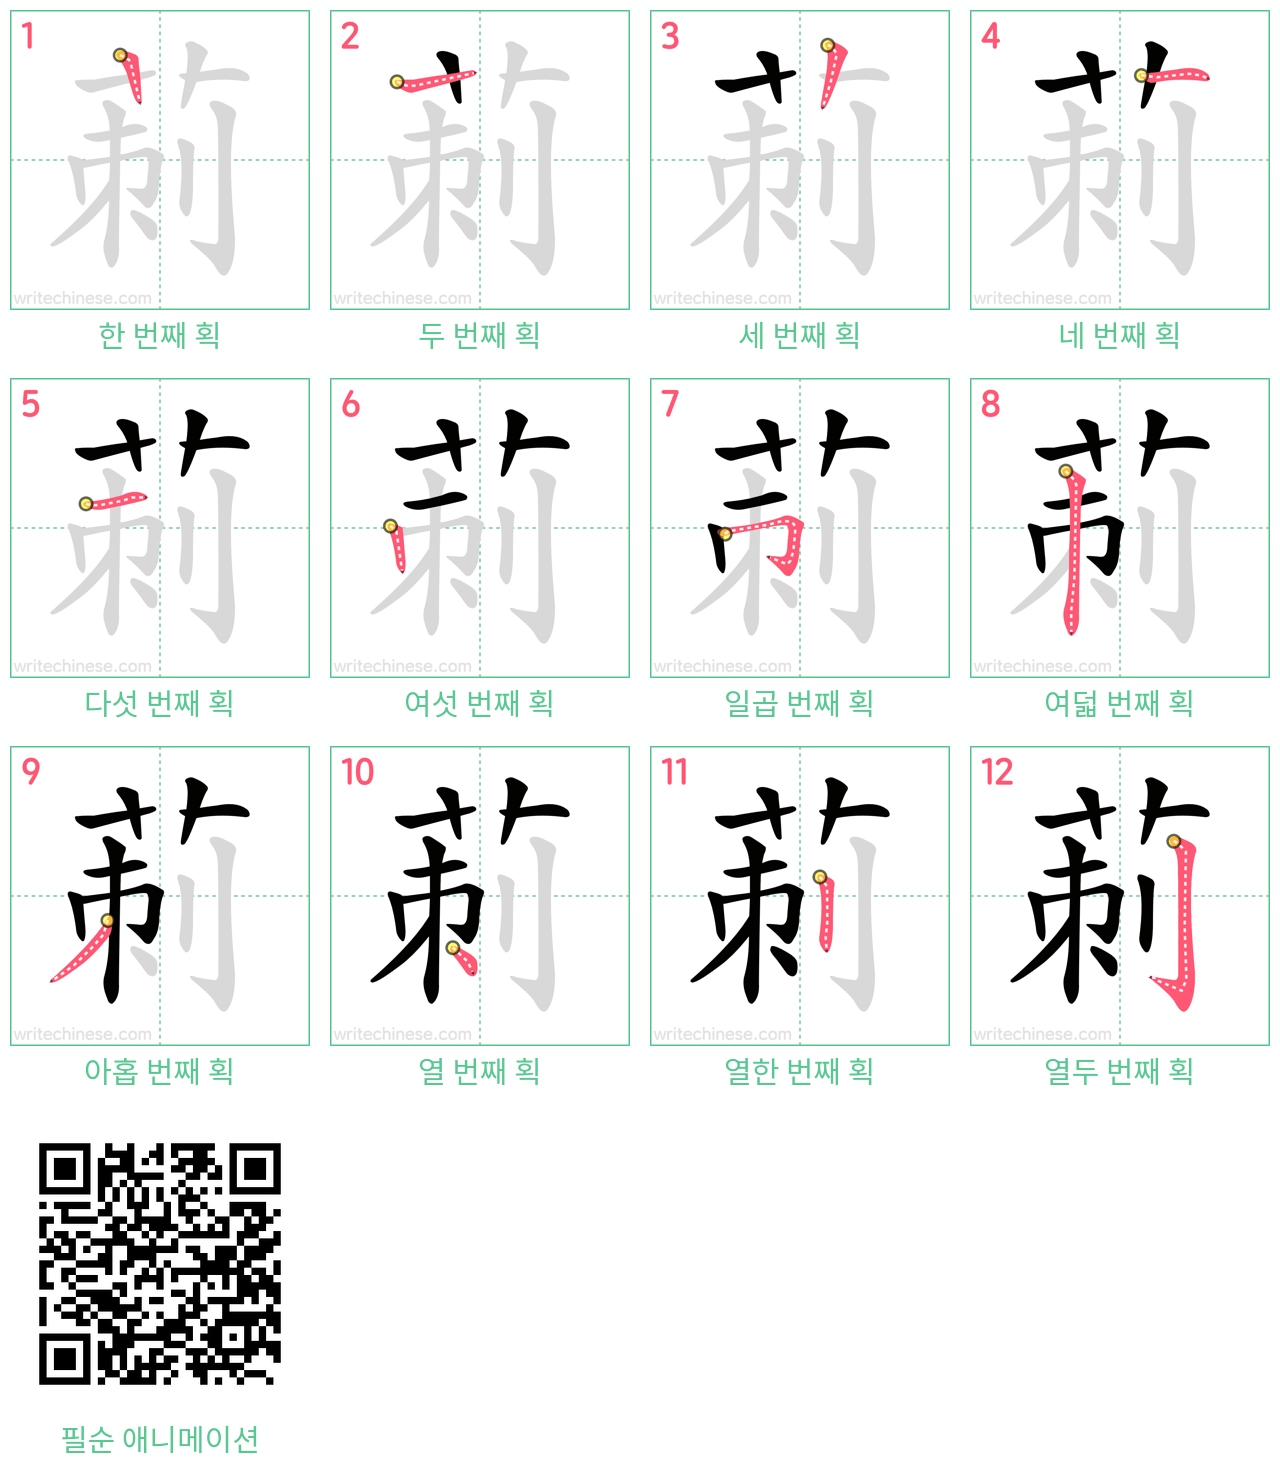 莿 step-by-step stroke order diagrams